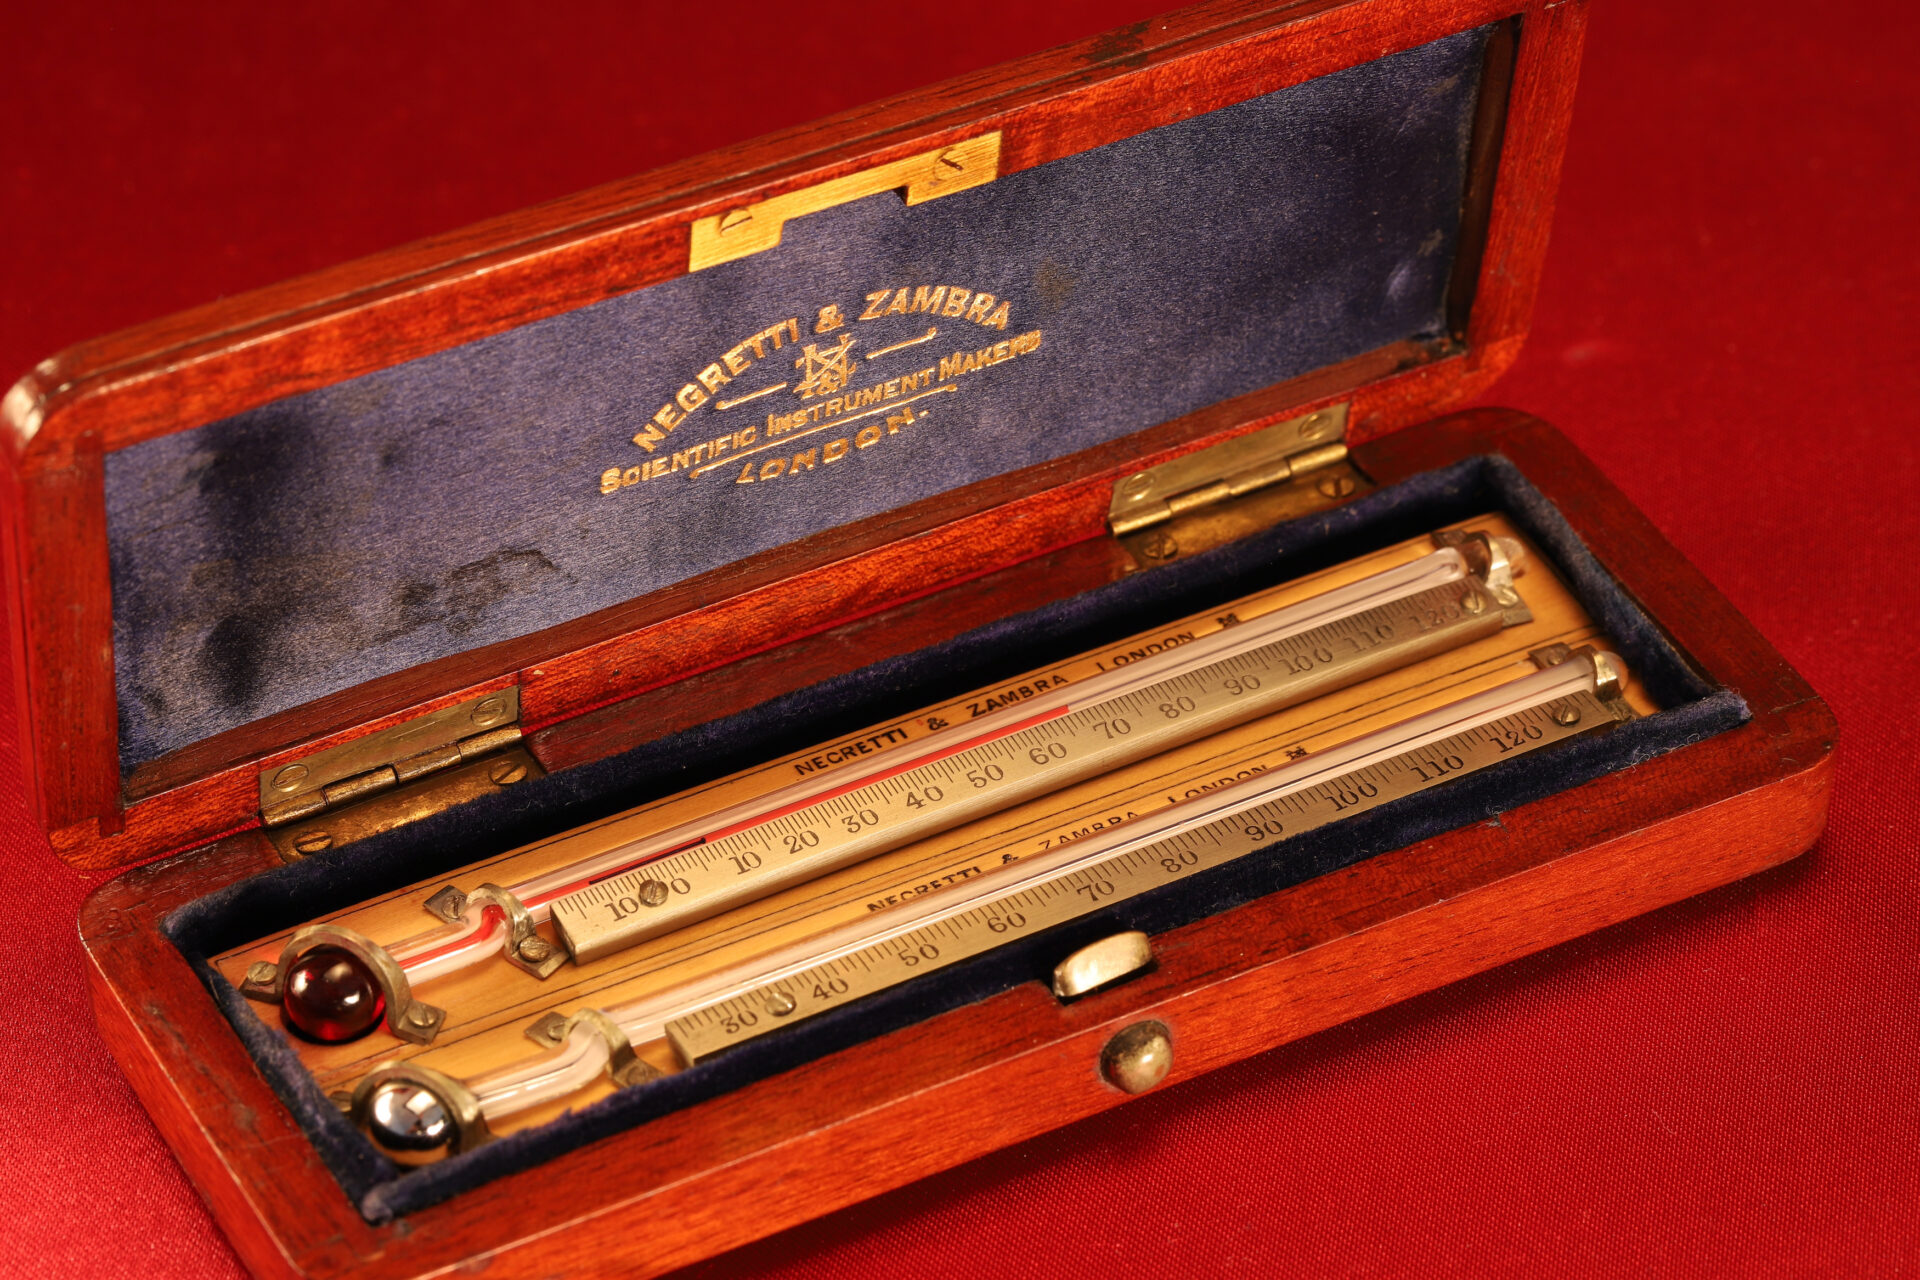 Image of Negretti & Zambra Scientific Thermometers c1915 in open travel case